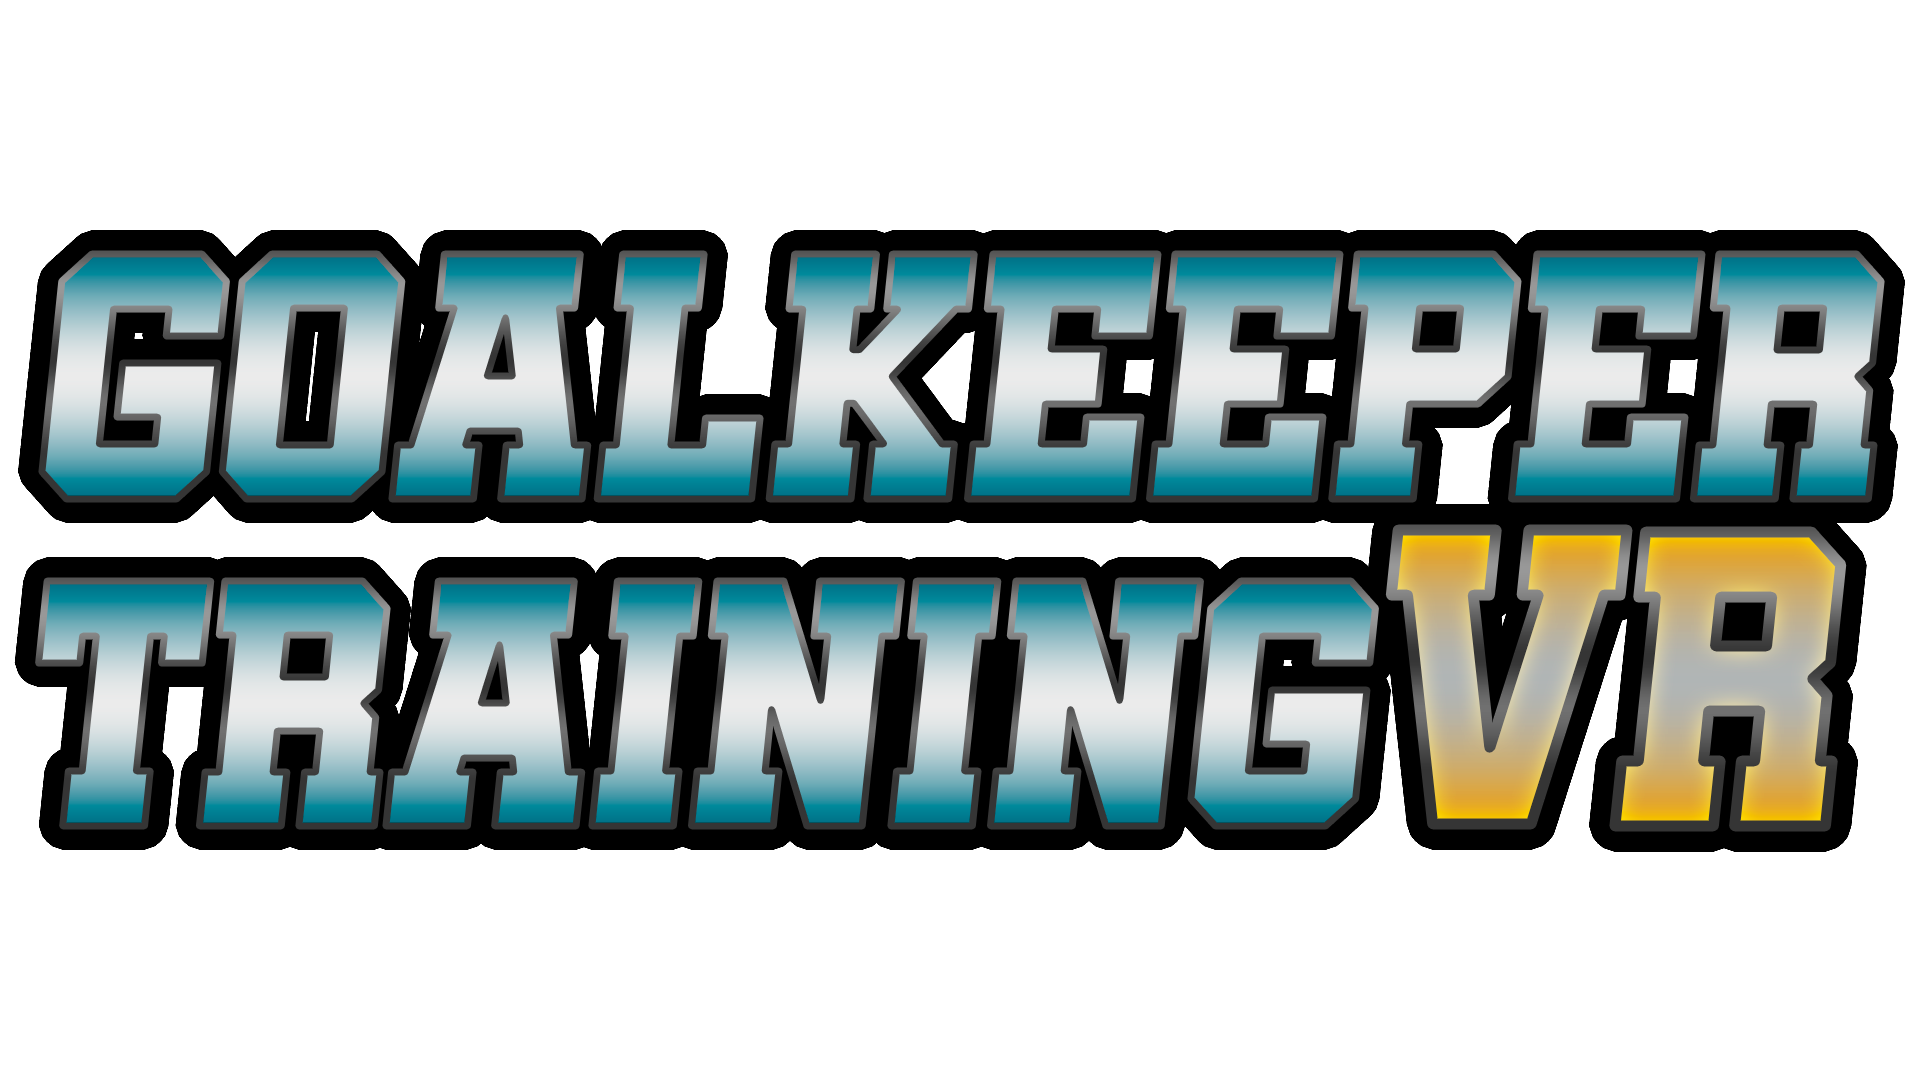 Goalkeeper Training VR